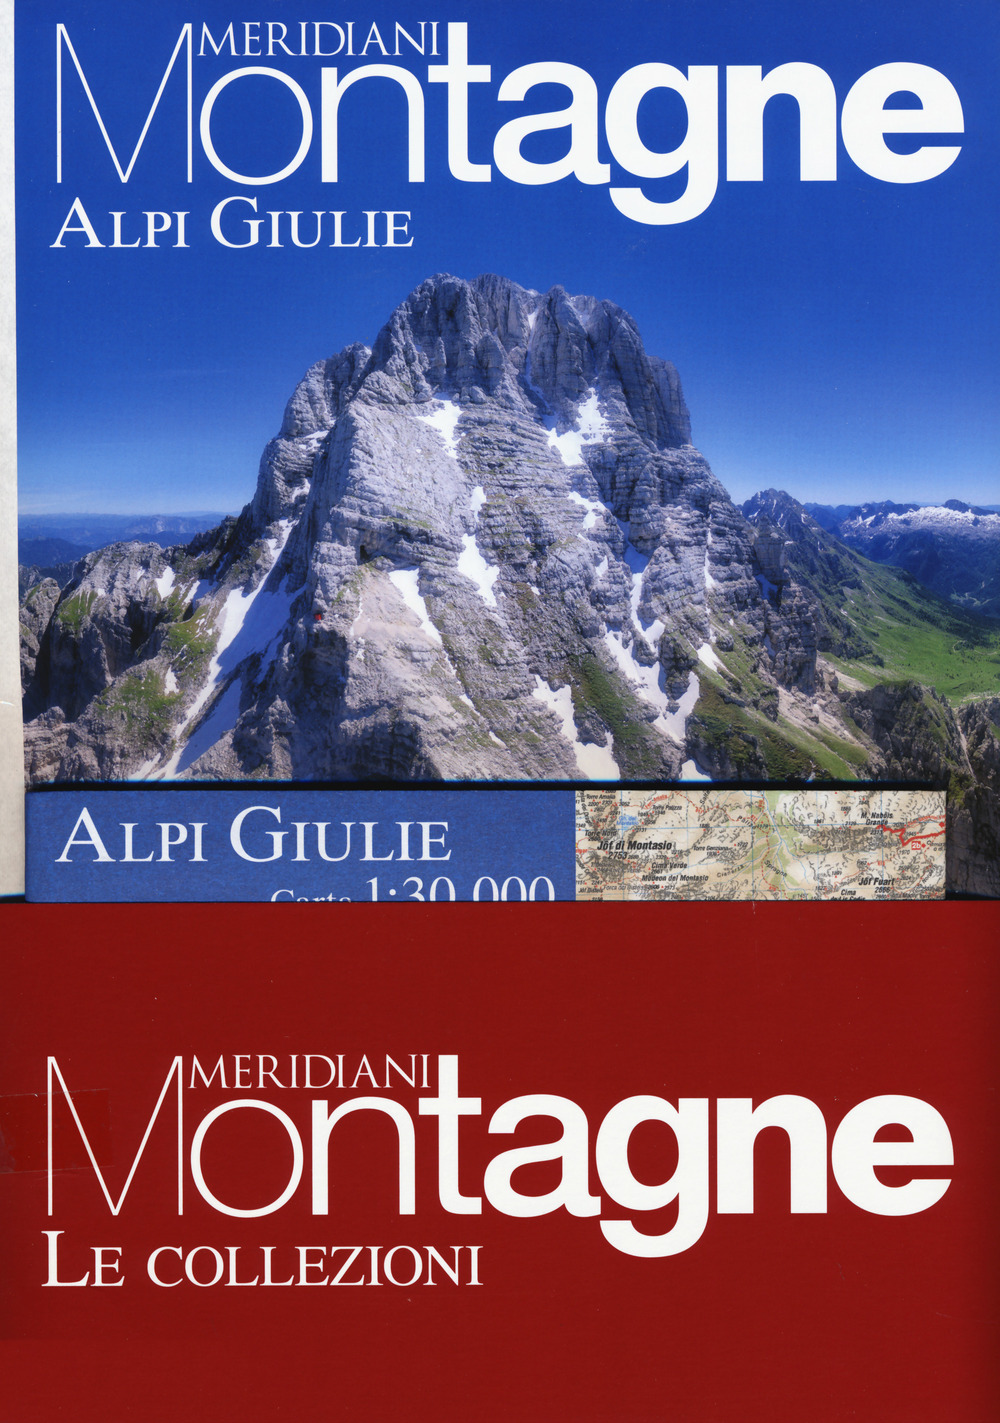 Alpi Giulie-Alti Tauri. Con Carta geografica ripiegata